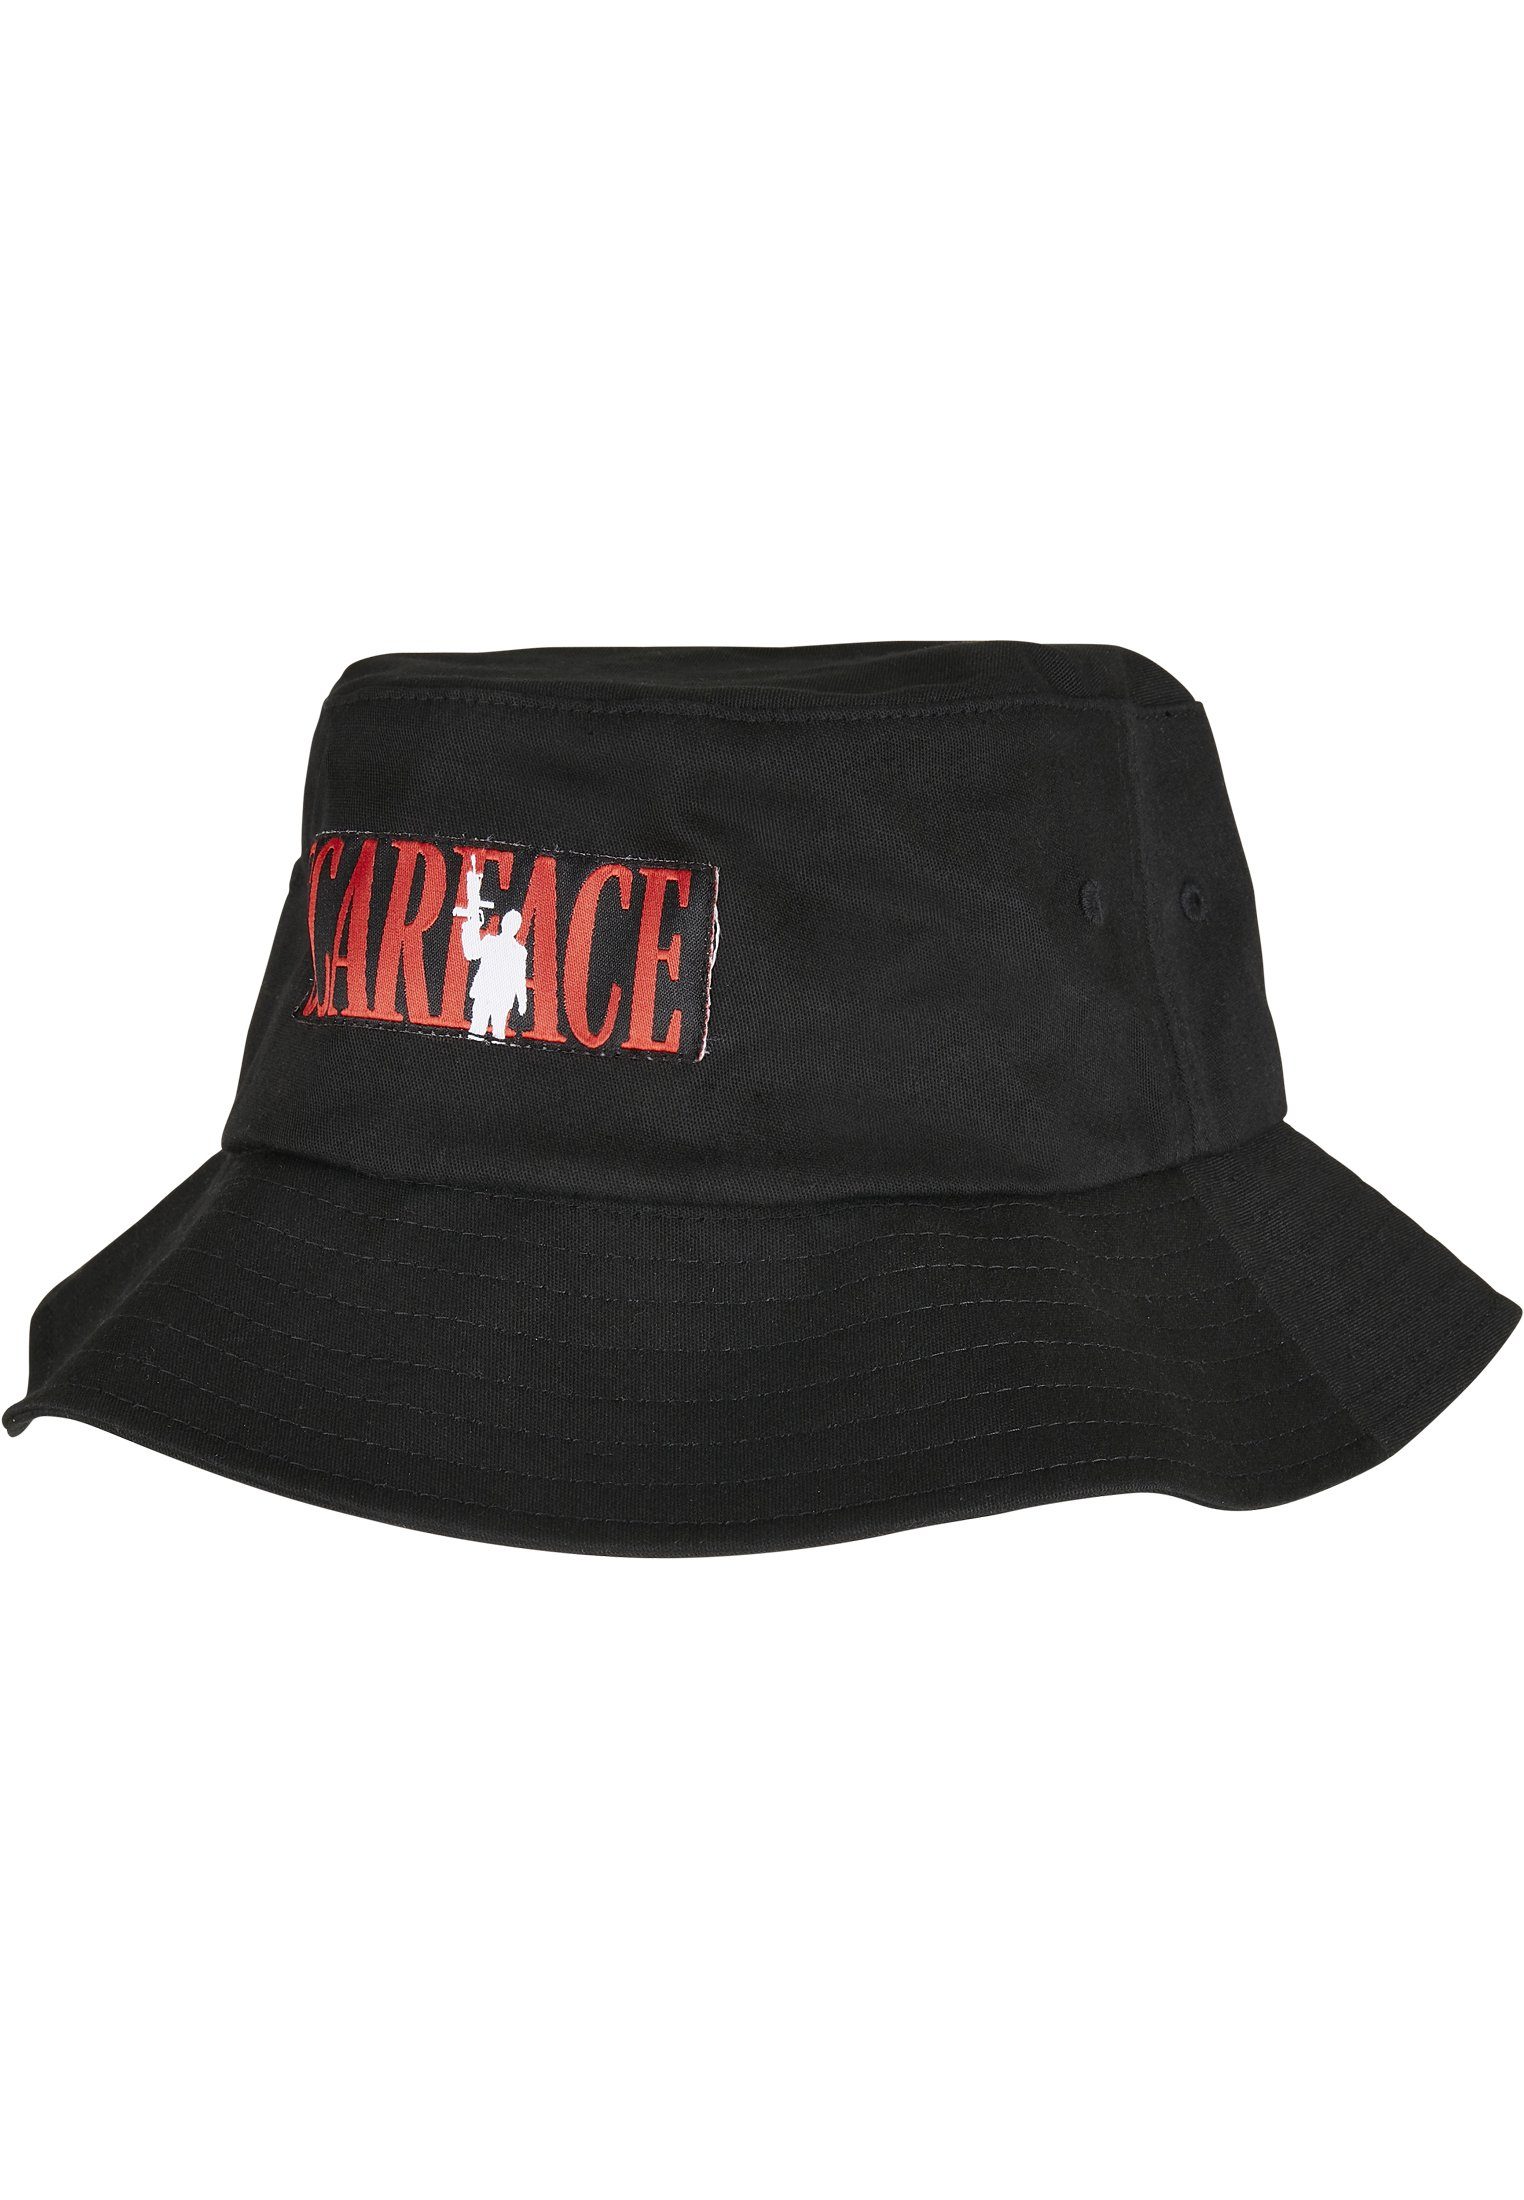 [Dieser Frühling/Herbst ist auch der beliebteste] Merchcode Flex Accessoires Bucket Logo Merchcode Hat Bucket Scarface Hat, Cap